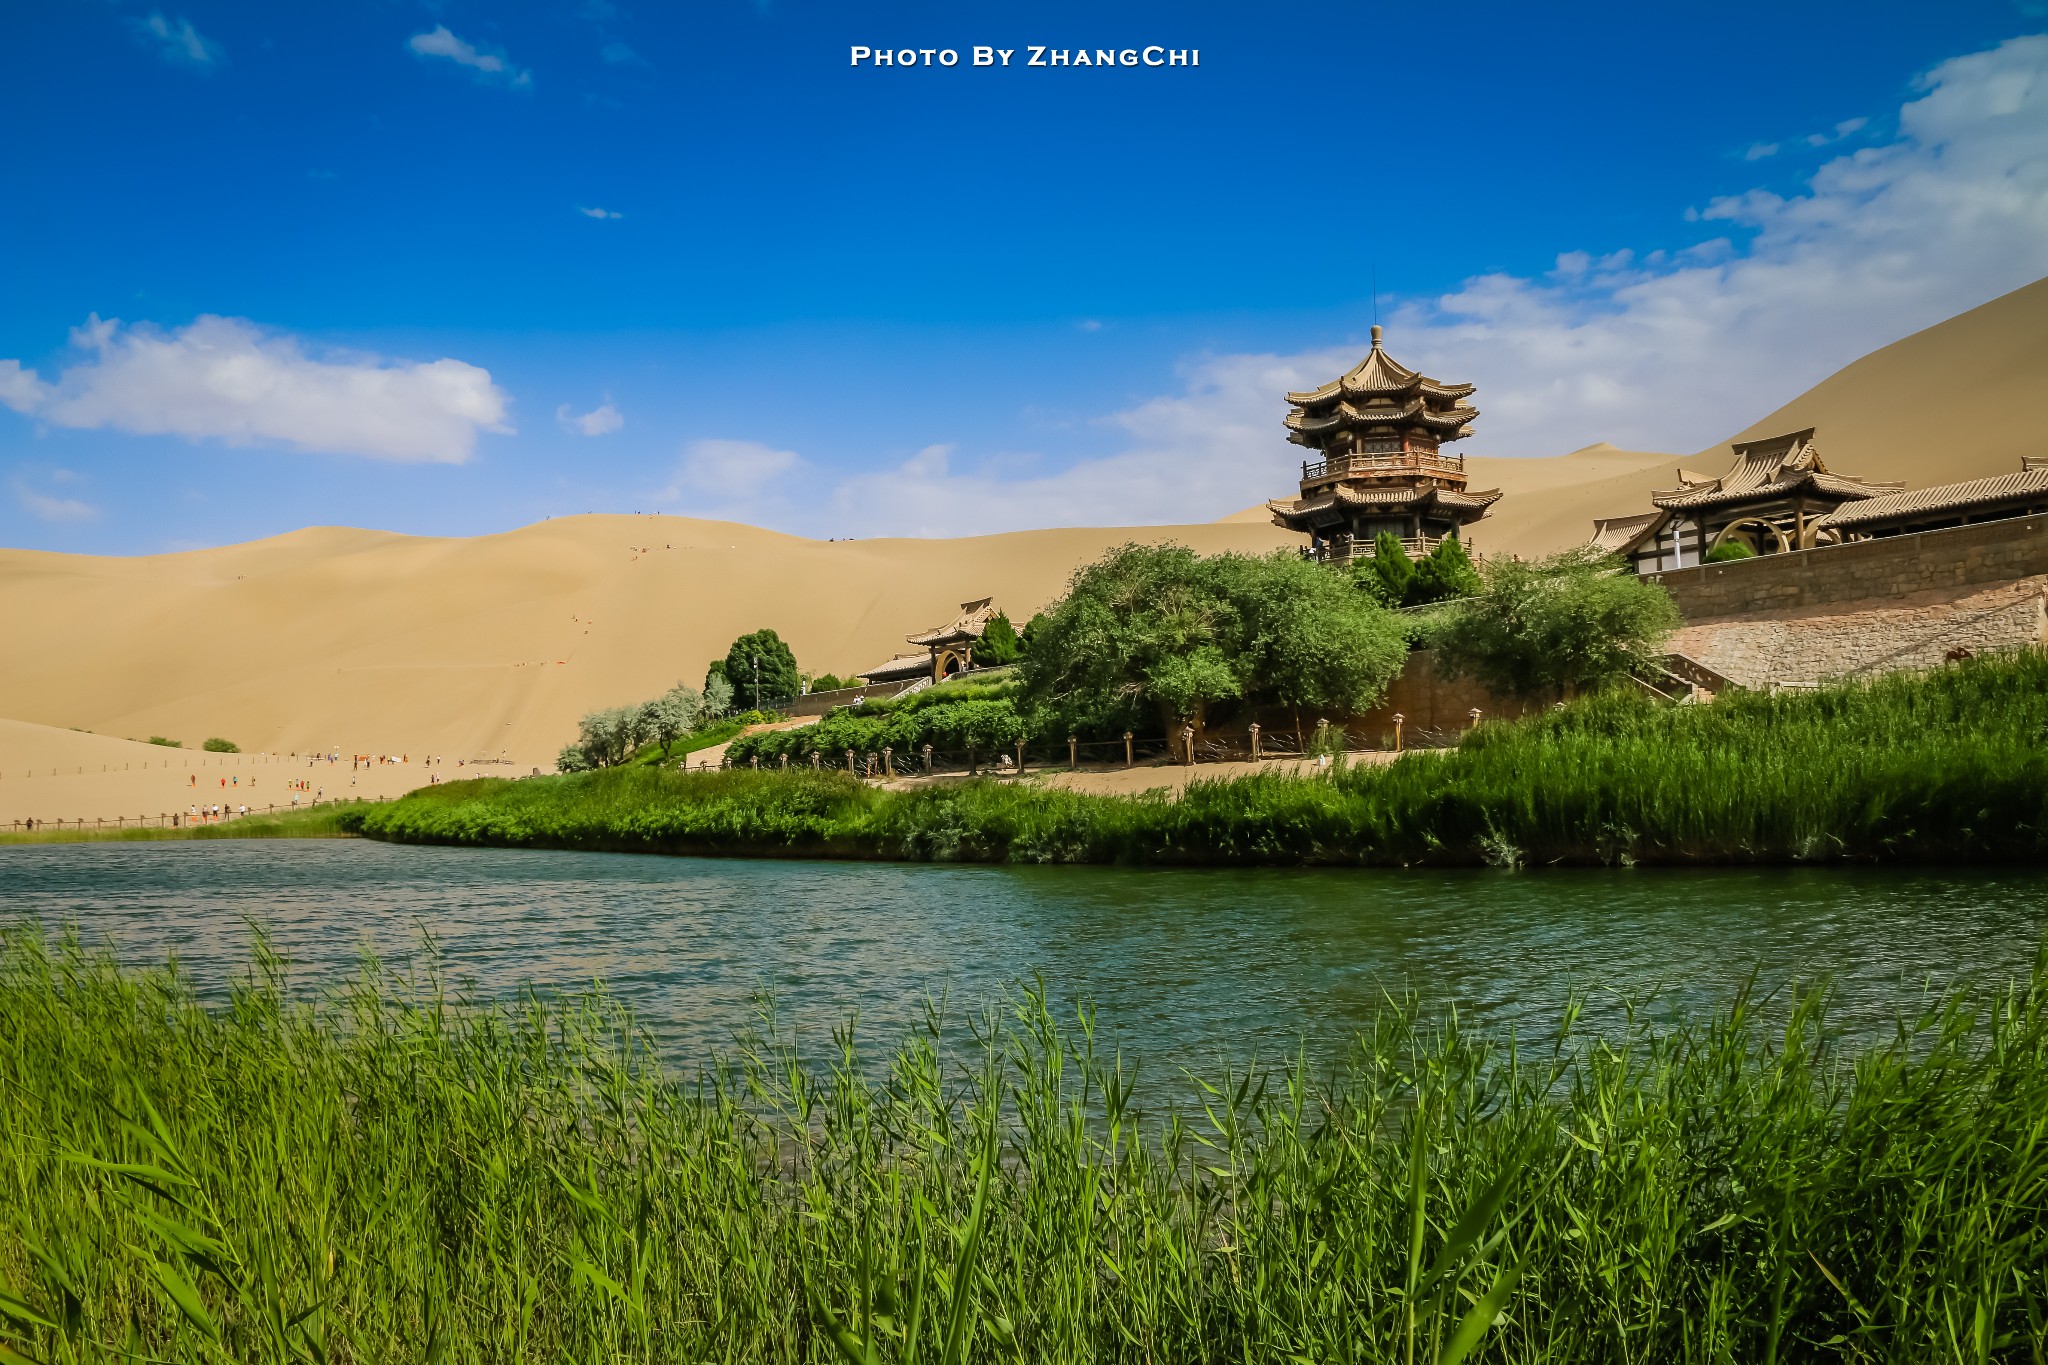 去甘肃寻觅一段河西走廊之梦图片572,甘肃旅游景点,风景名胜 